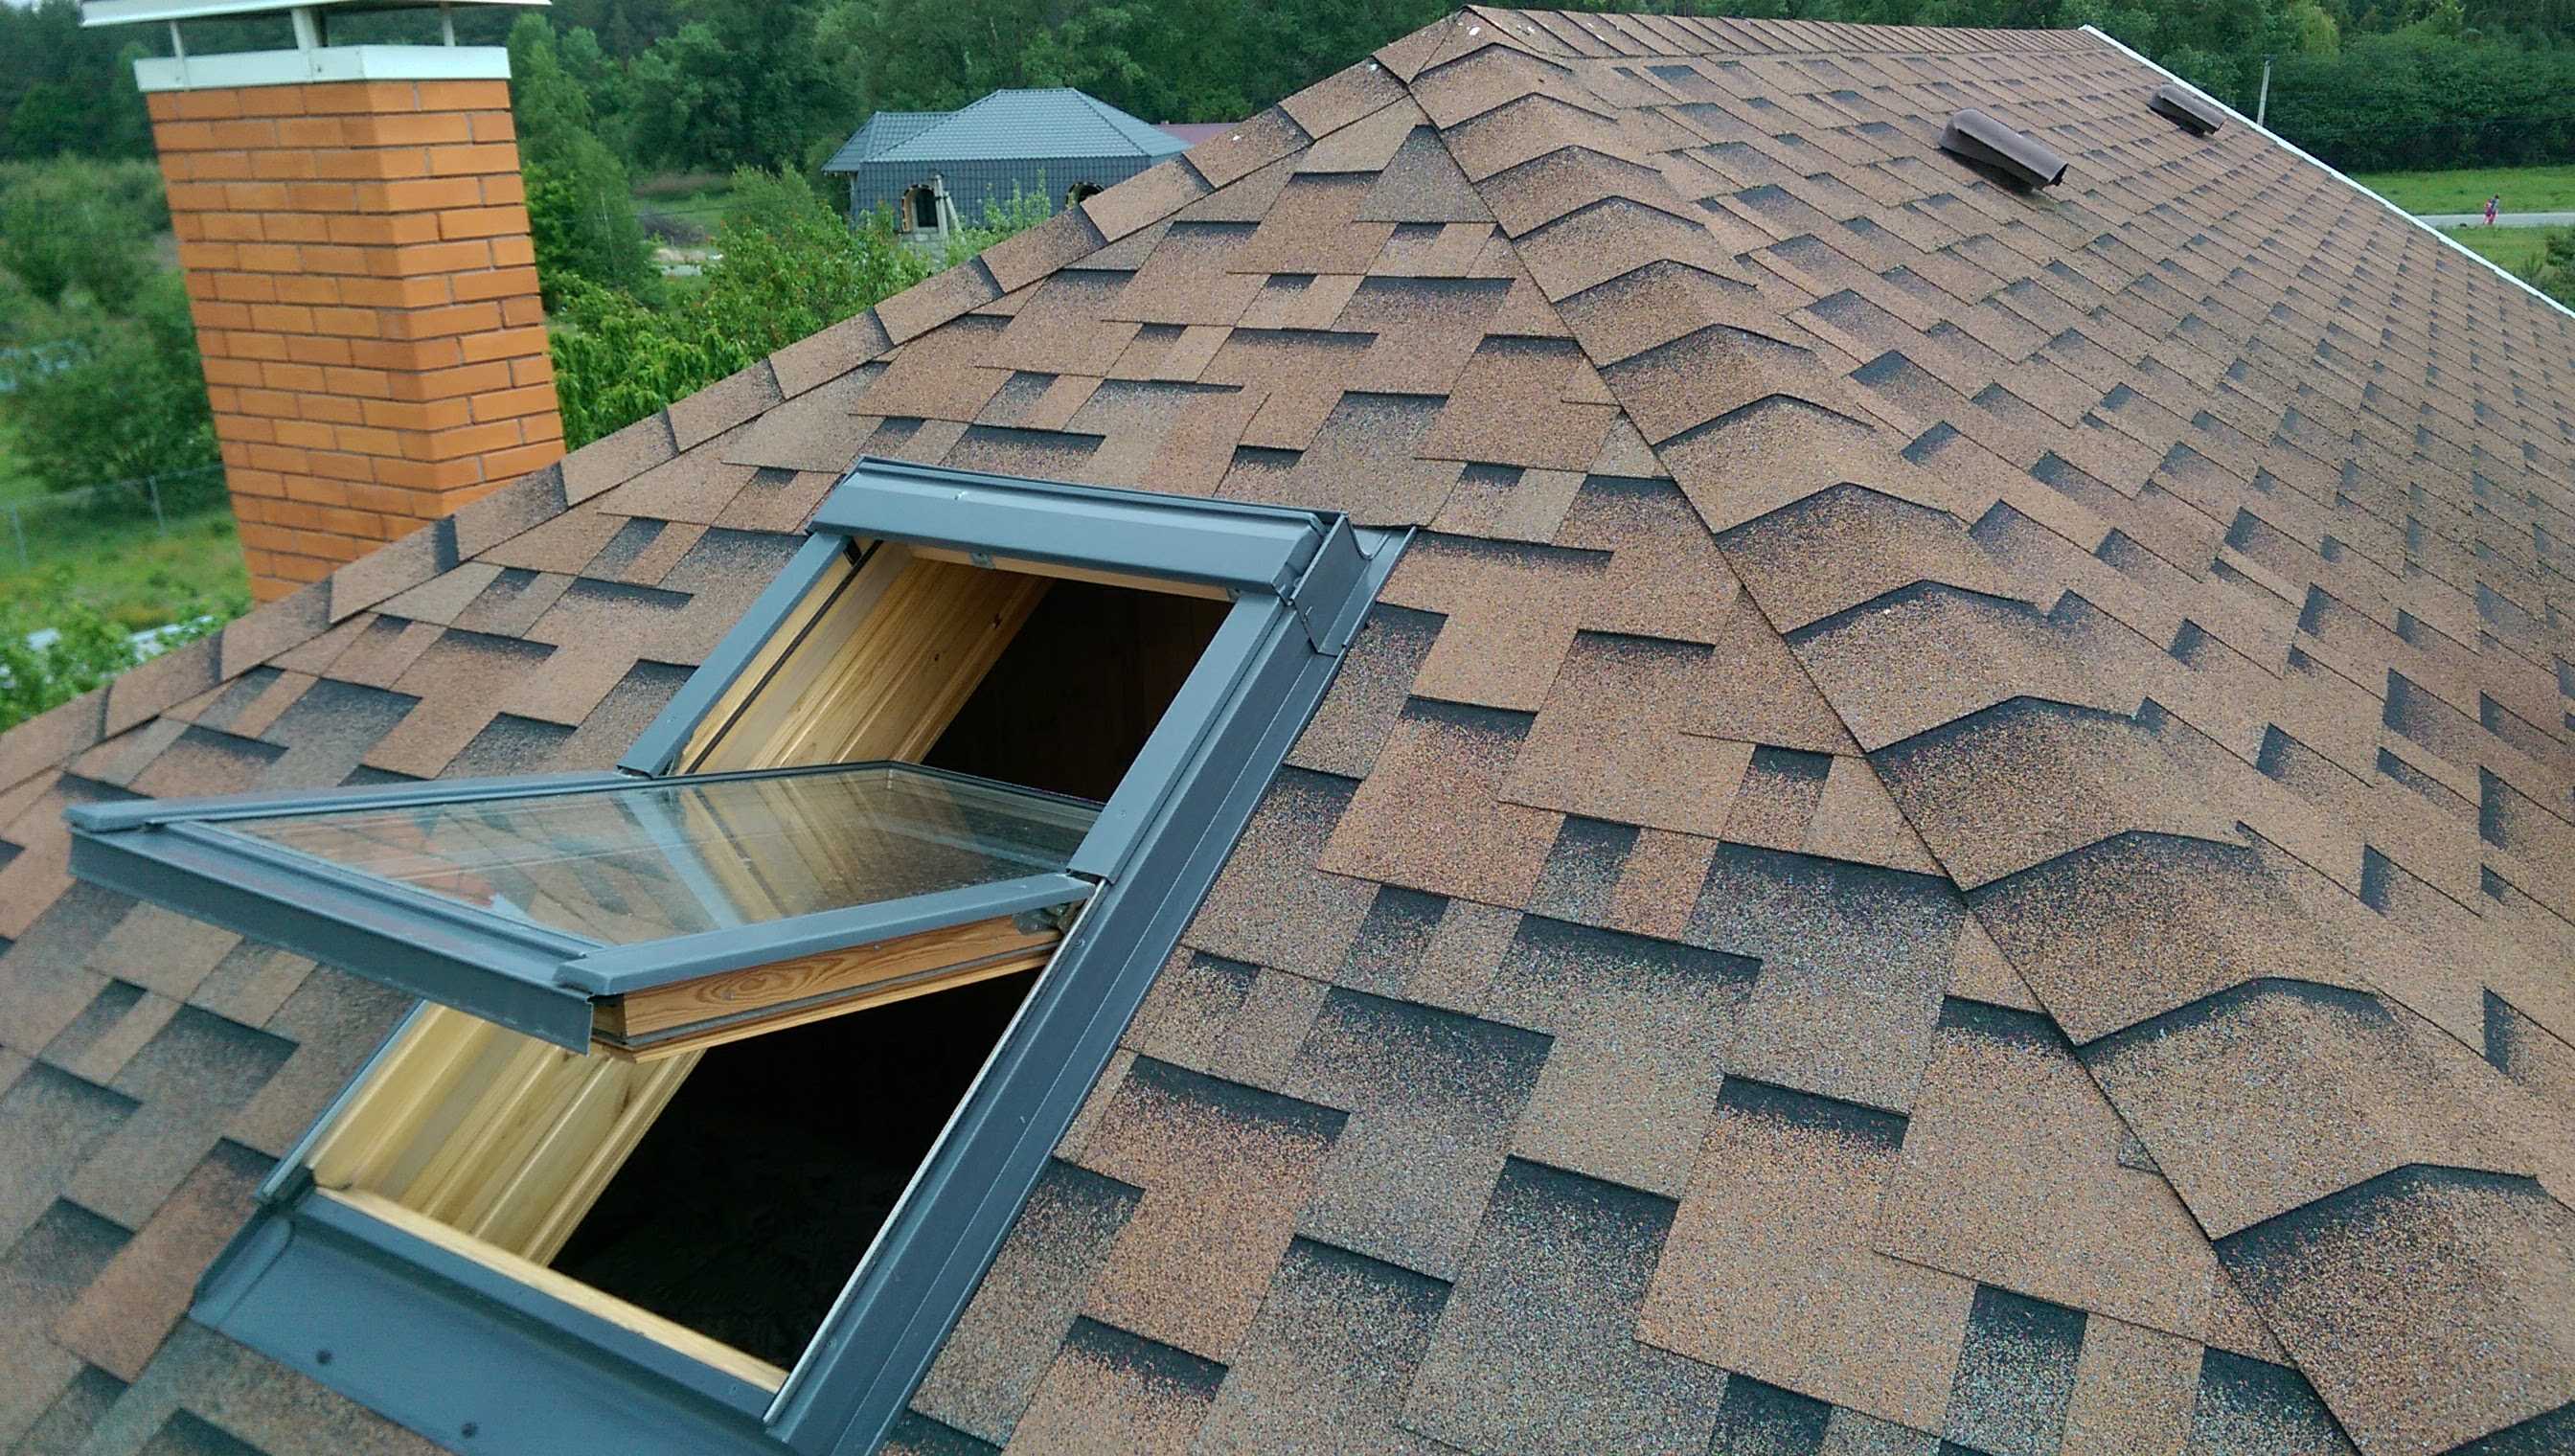 Чем можно недорого накрыть крышу дома?